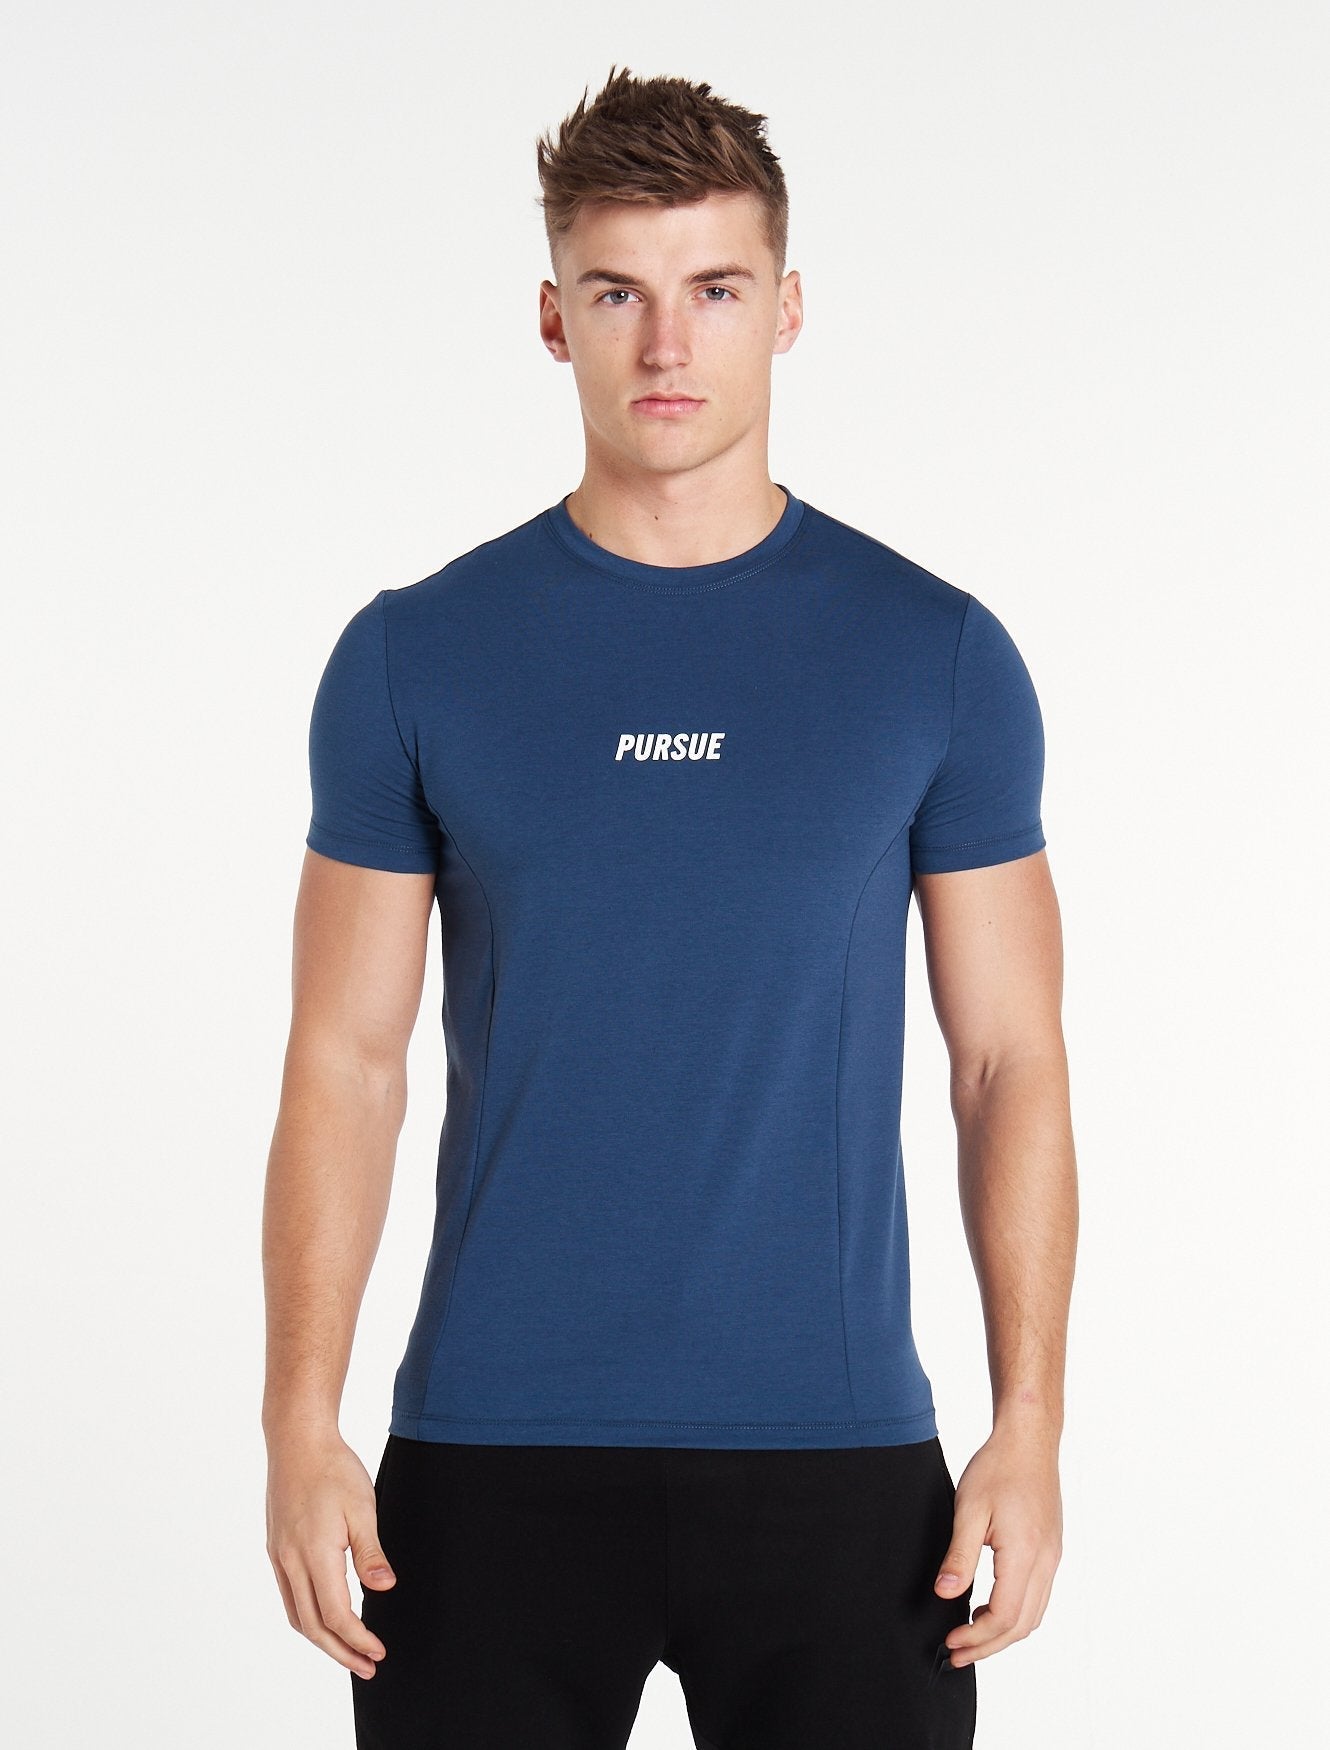 Essential T-Shirt / Blue Pursue Fitness 1